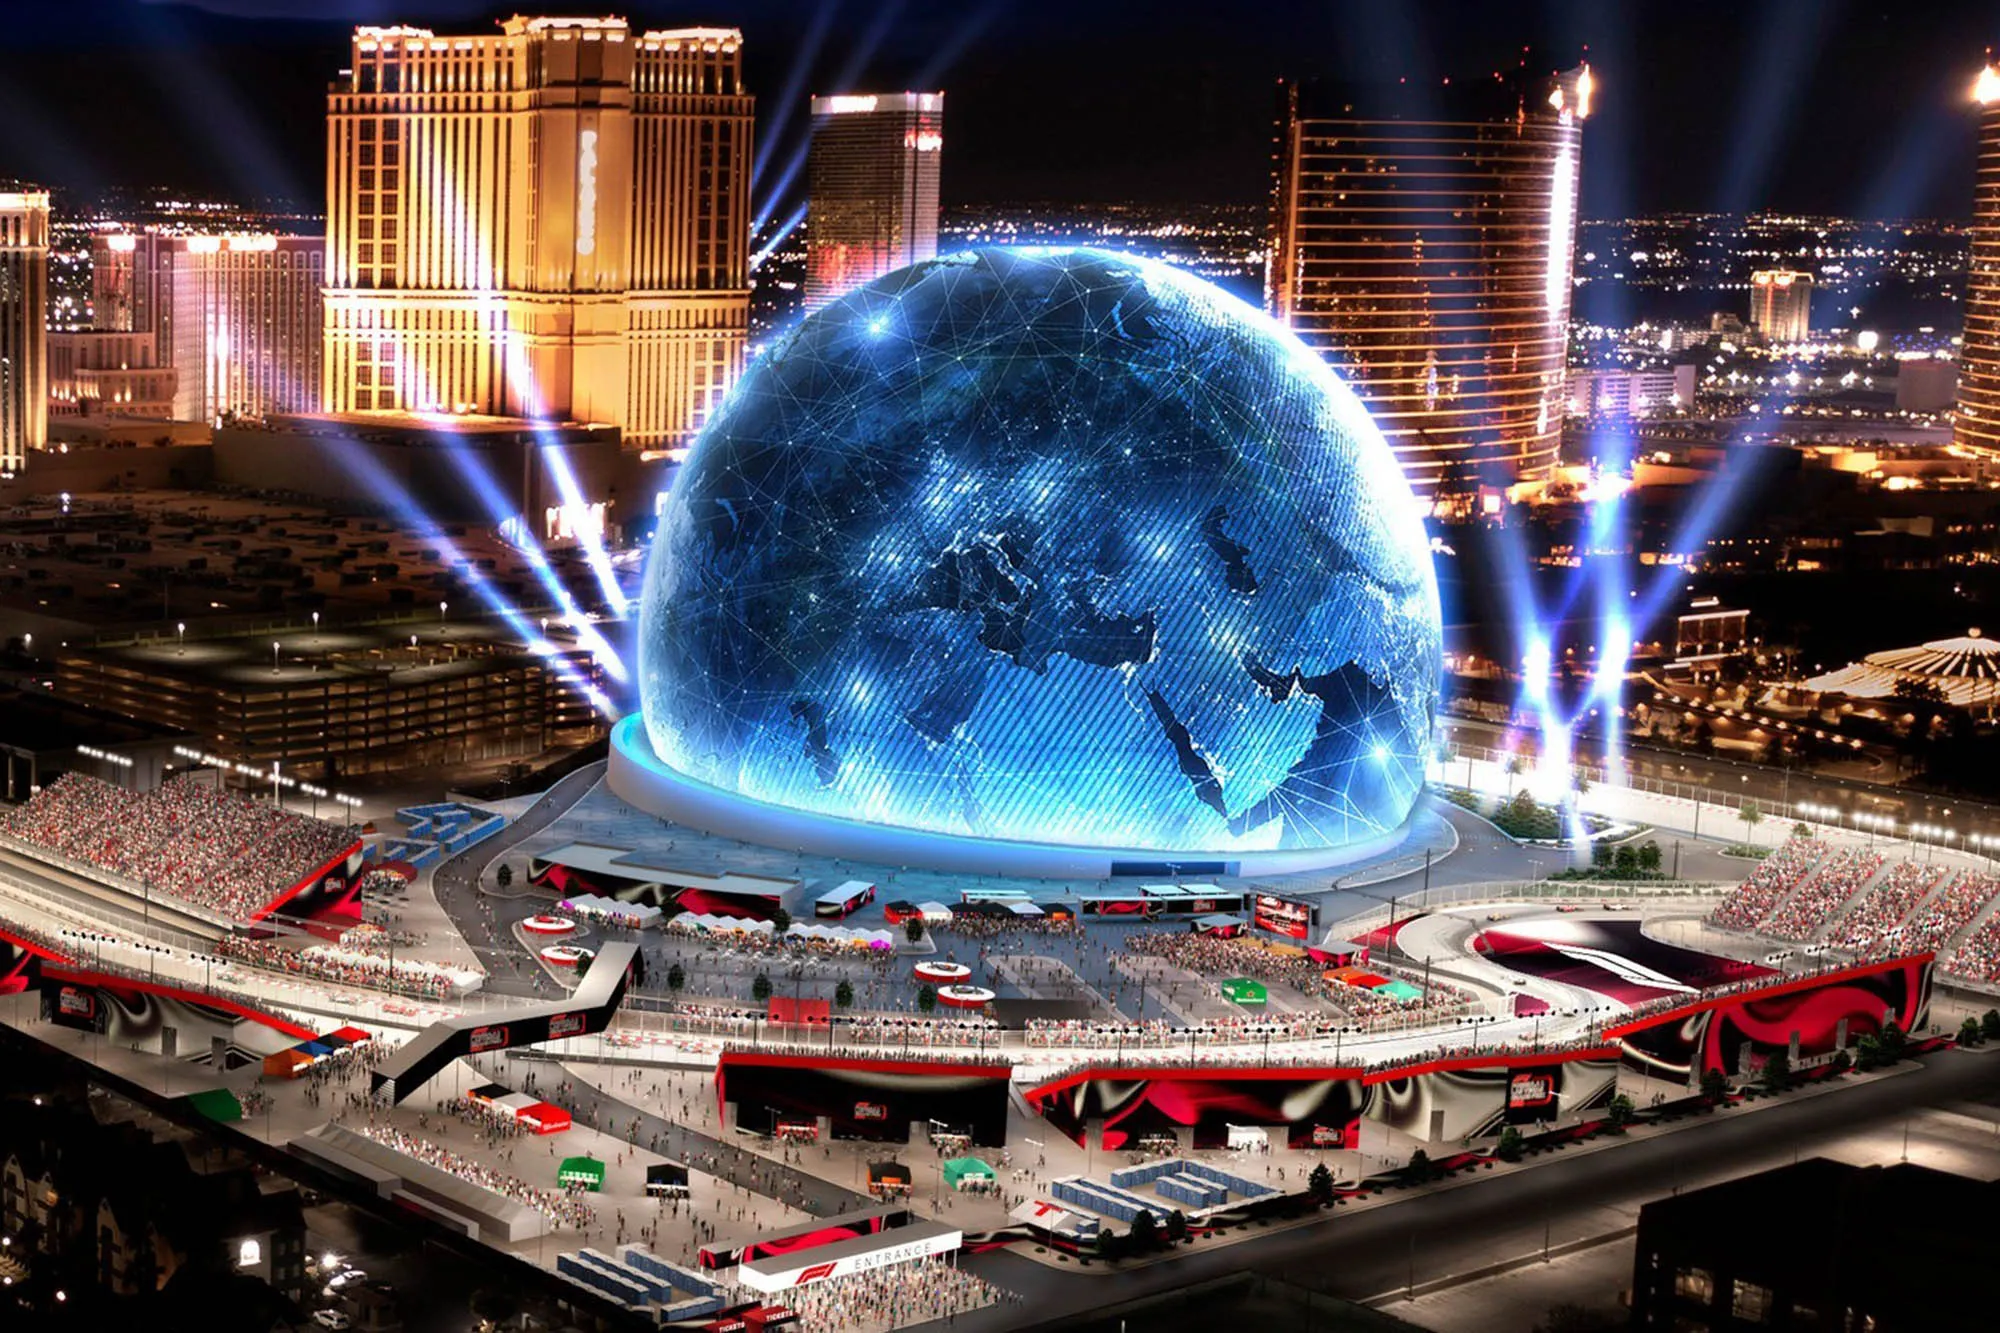 Mrekullia e Arkitekturës Moderne: Sfera në Las Vegas